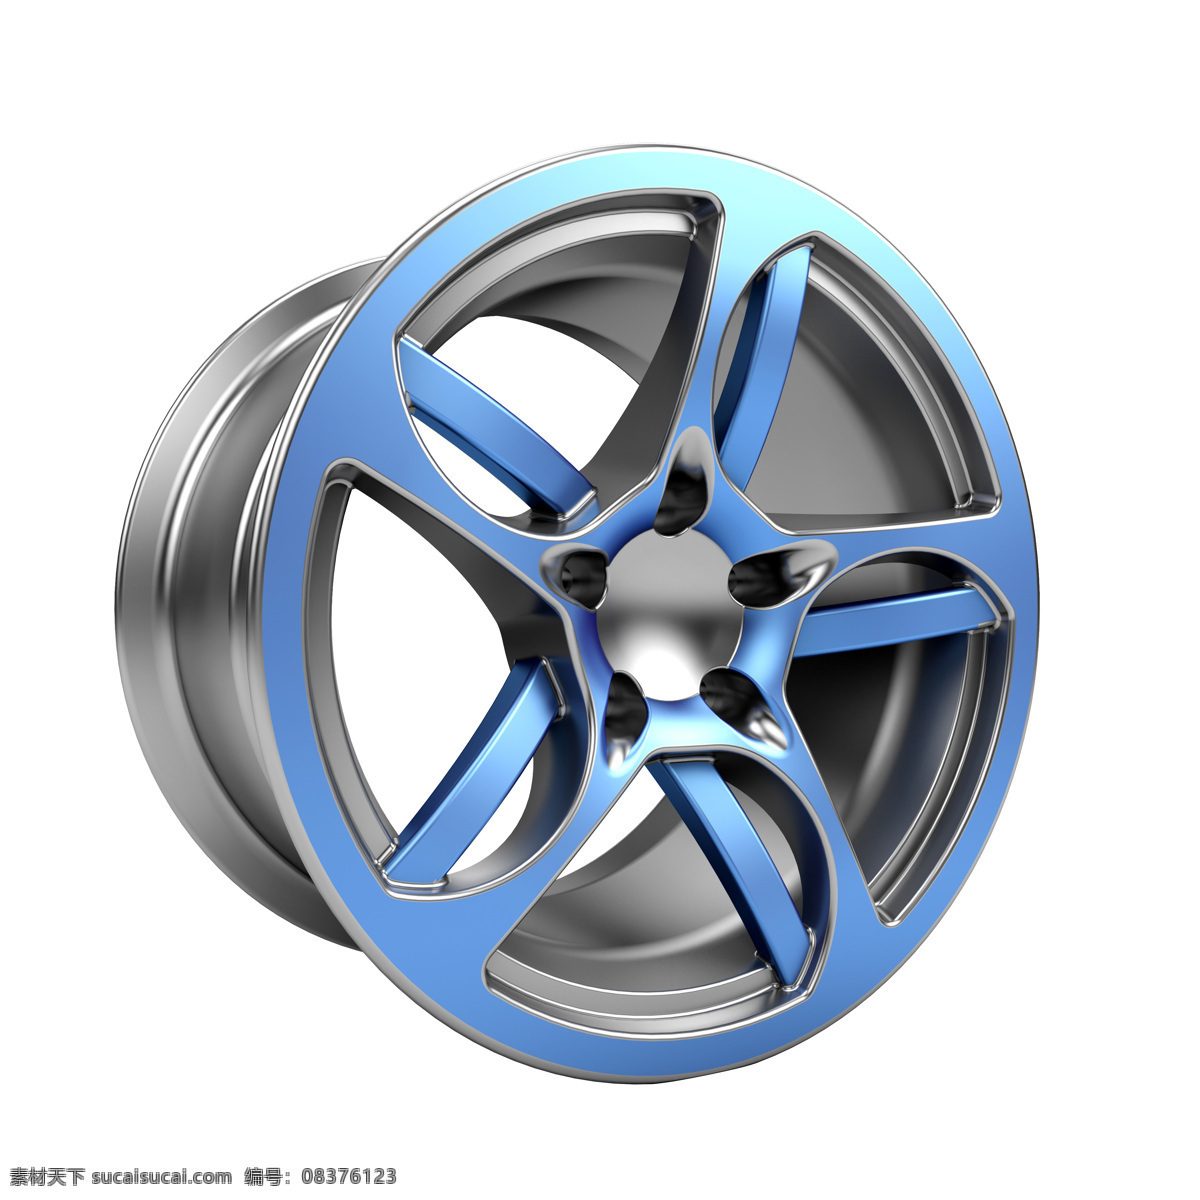 蓝色 轮毂 模型 汽车轮子 轿车轮毂 汽车零件 汽配 汽车轮毂 汽车图片 现代科技